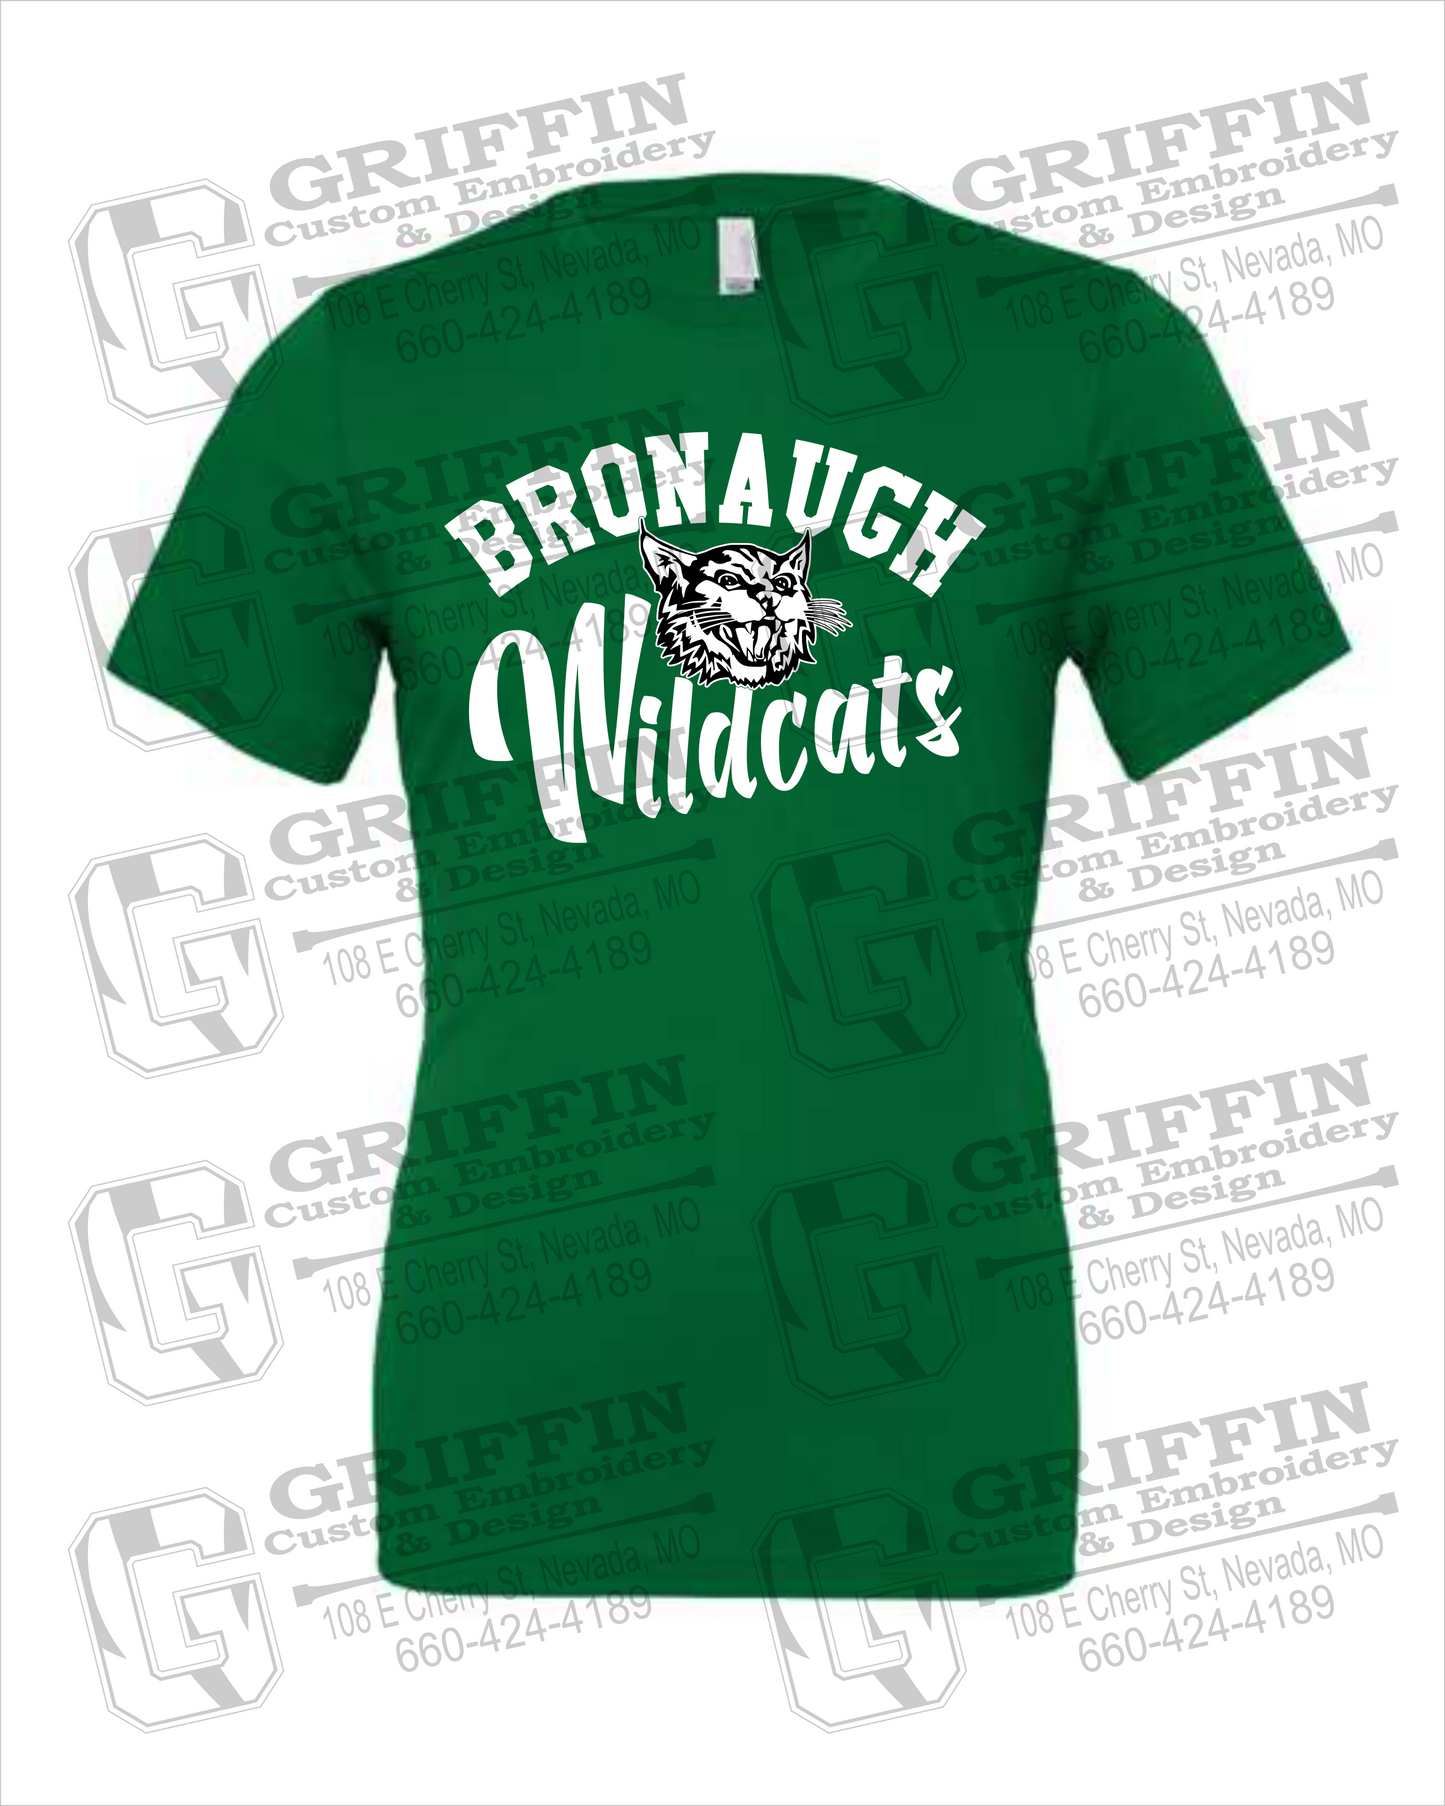 Bronaugh Wildcats 24-A 100% Cotton Short Sleeve T-Shirt